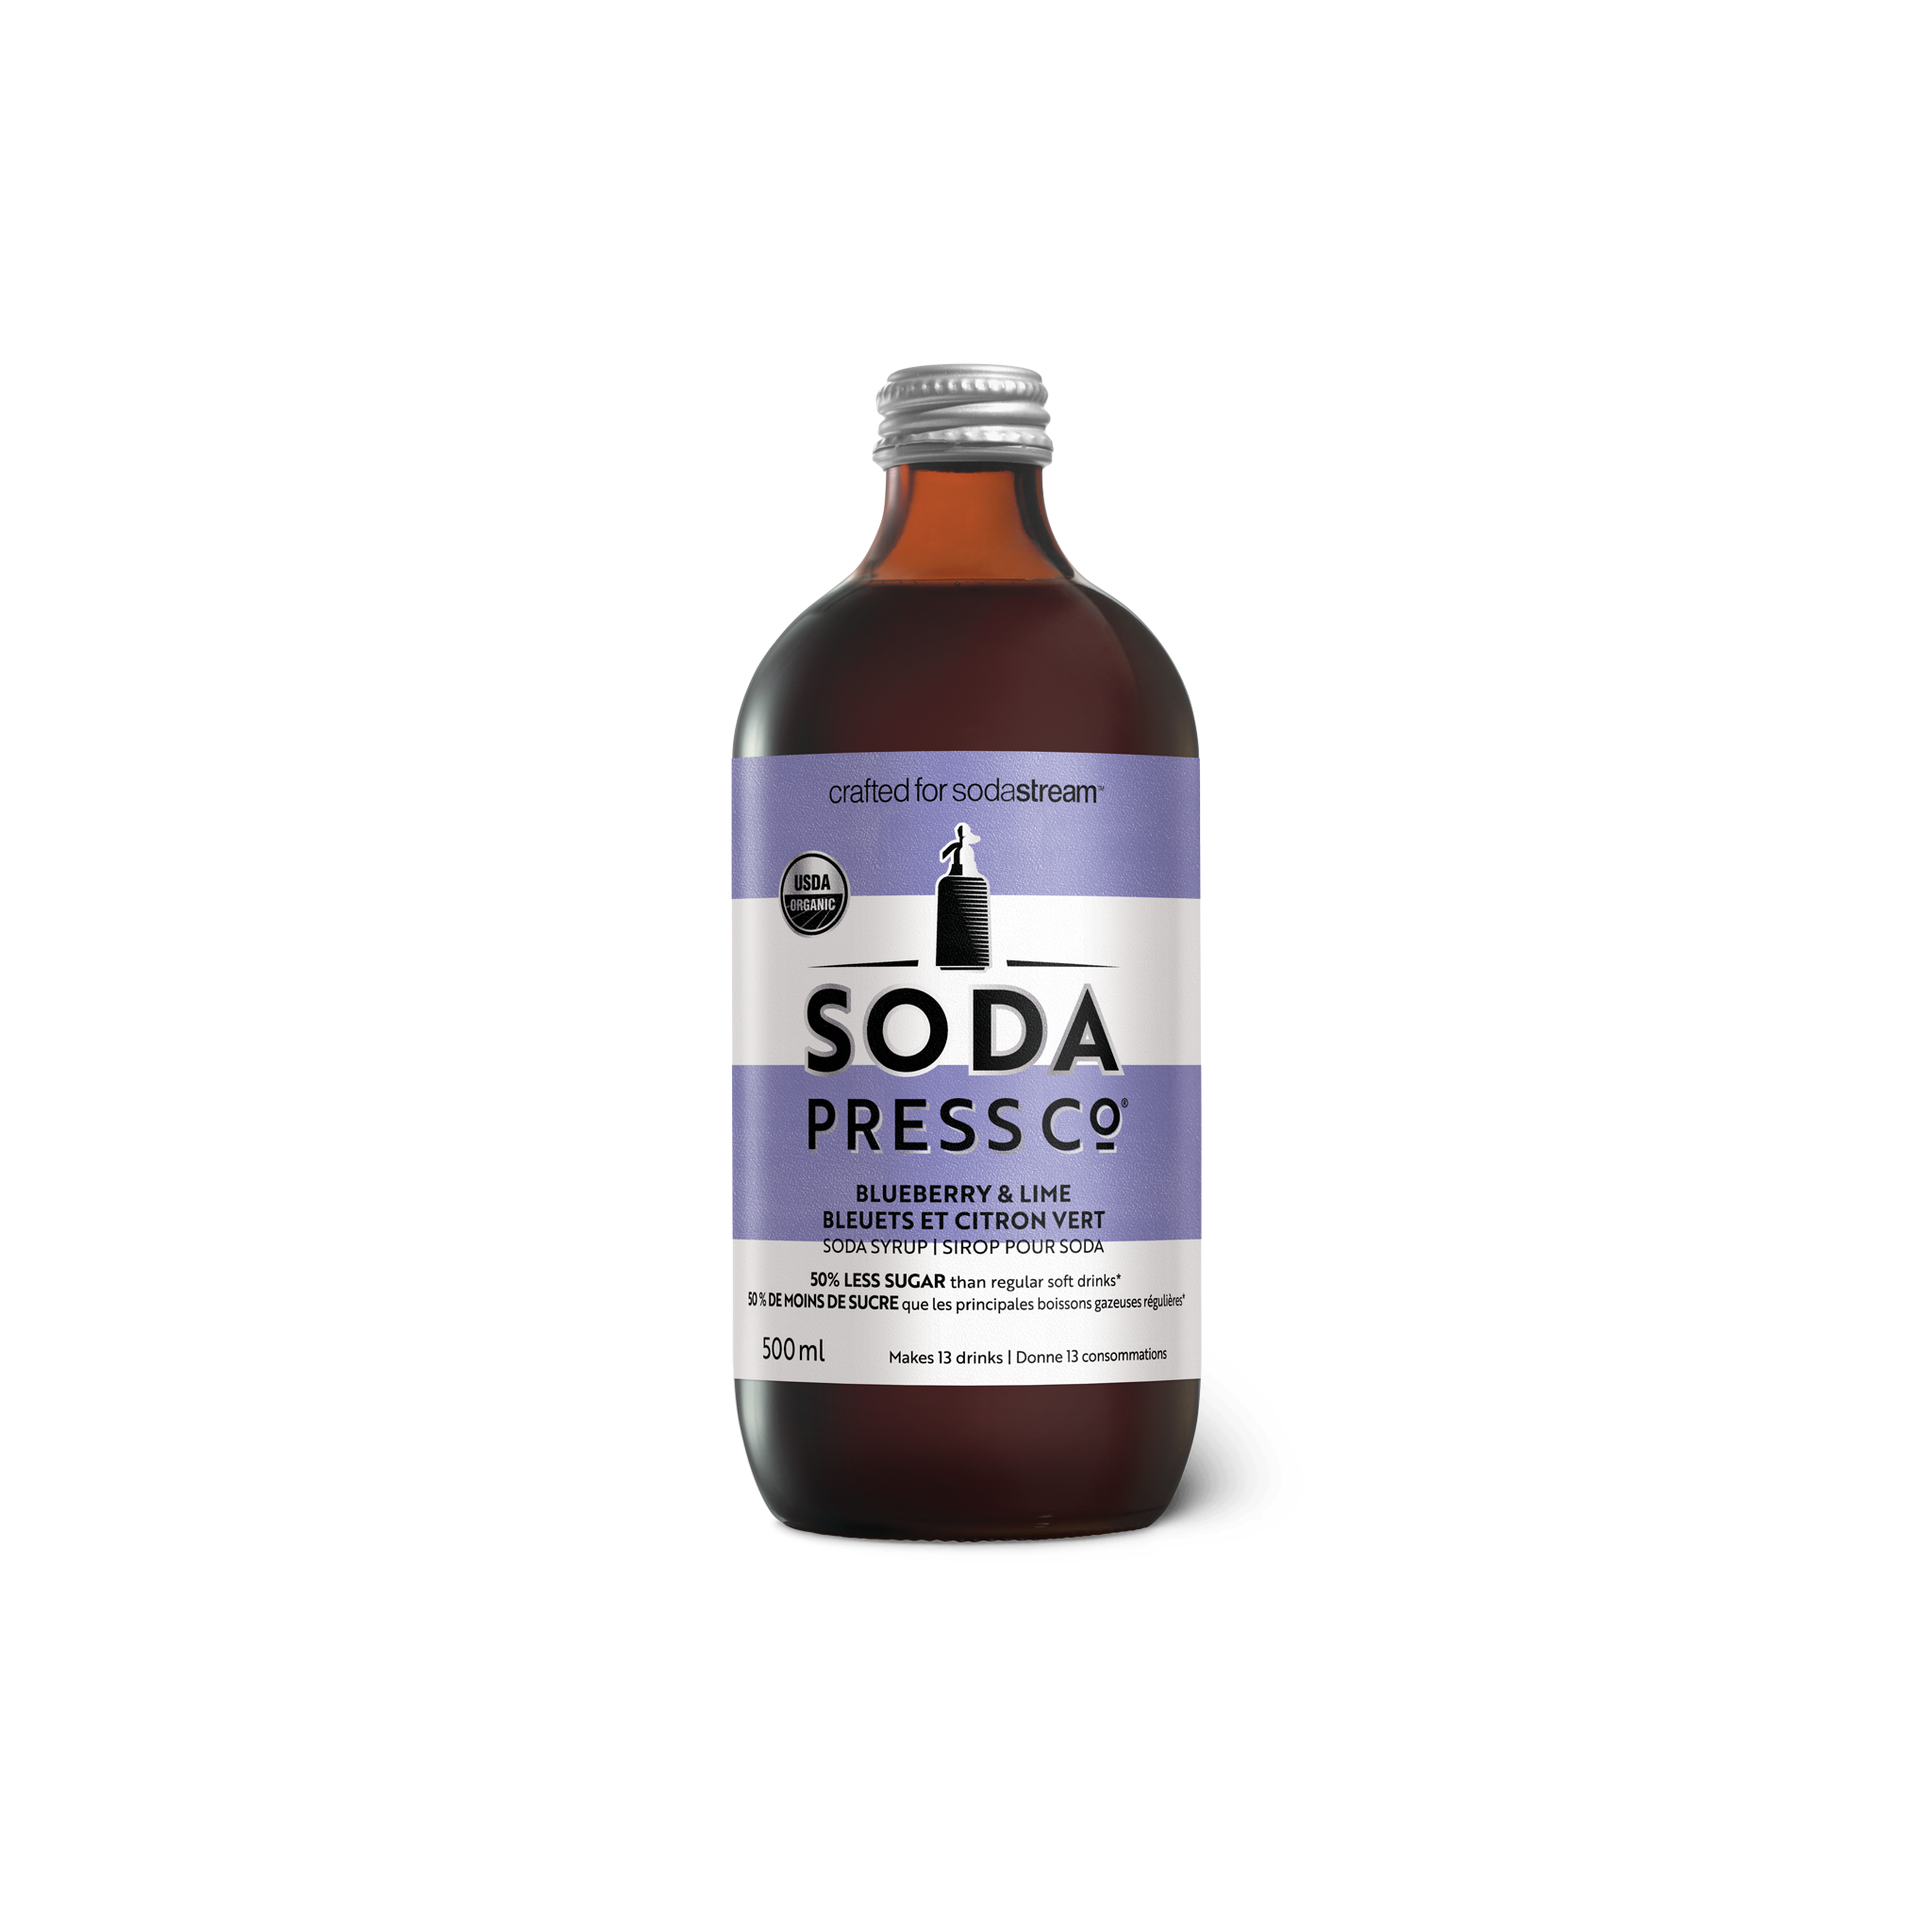 Soda Press Blueberry Lime sodastream